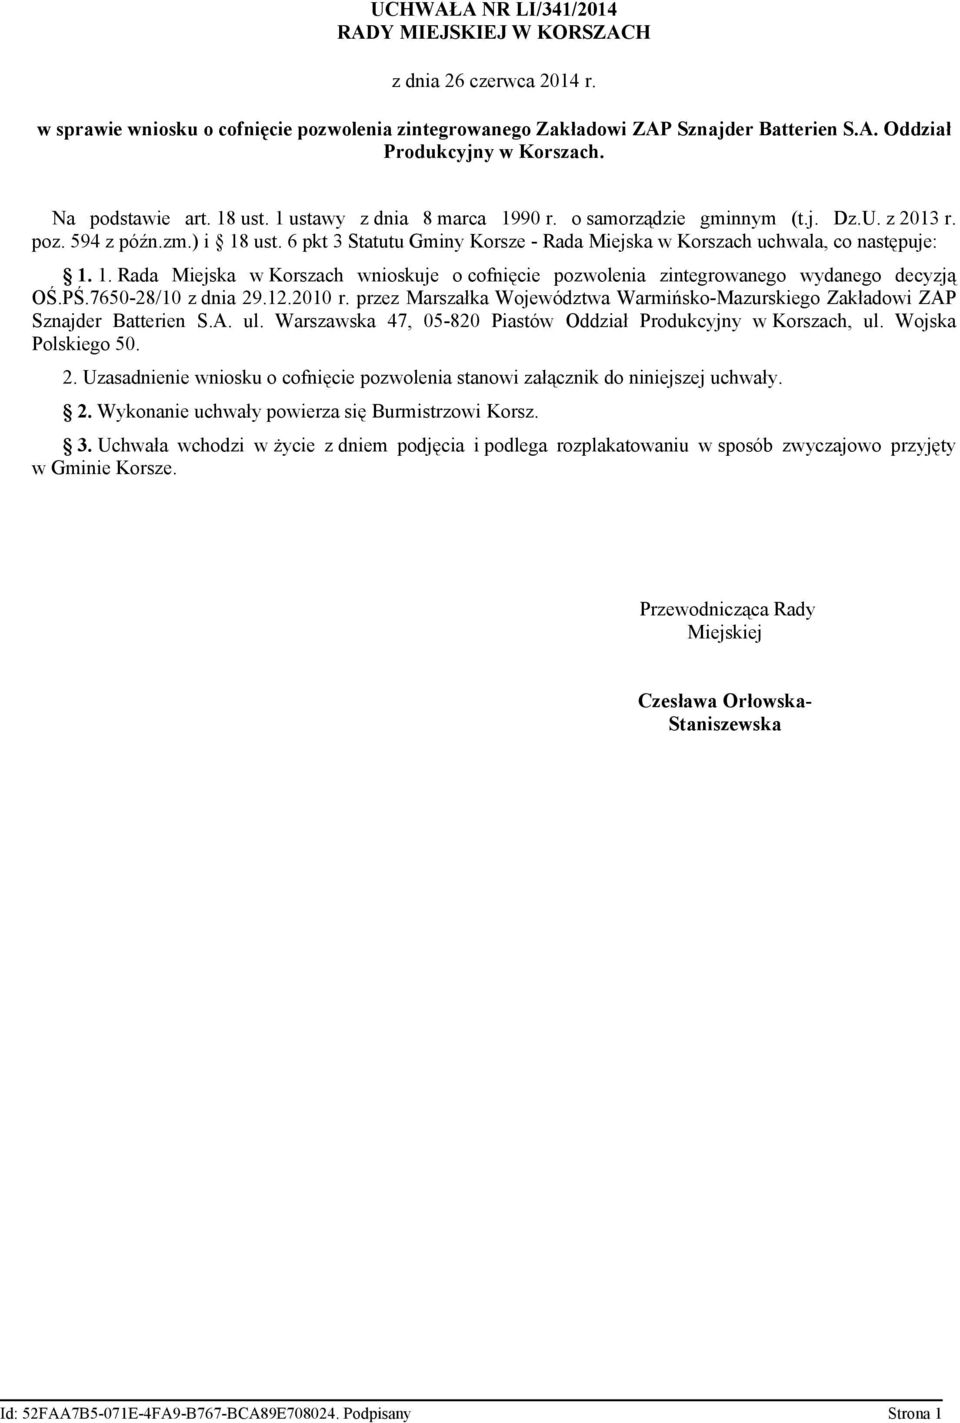 6 pkt 3 Statutu Gminy Korsze - Rada Miejska w Korszach uchwala, co następuje: 1. 1. Rada Miejska w Korszach wnioskuje o cofnięcie pozwolenia zintegrowanego wydanego decyzją OŚ.PŚ.7650-28/10 z dnia 29.